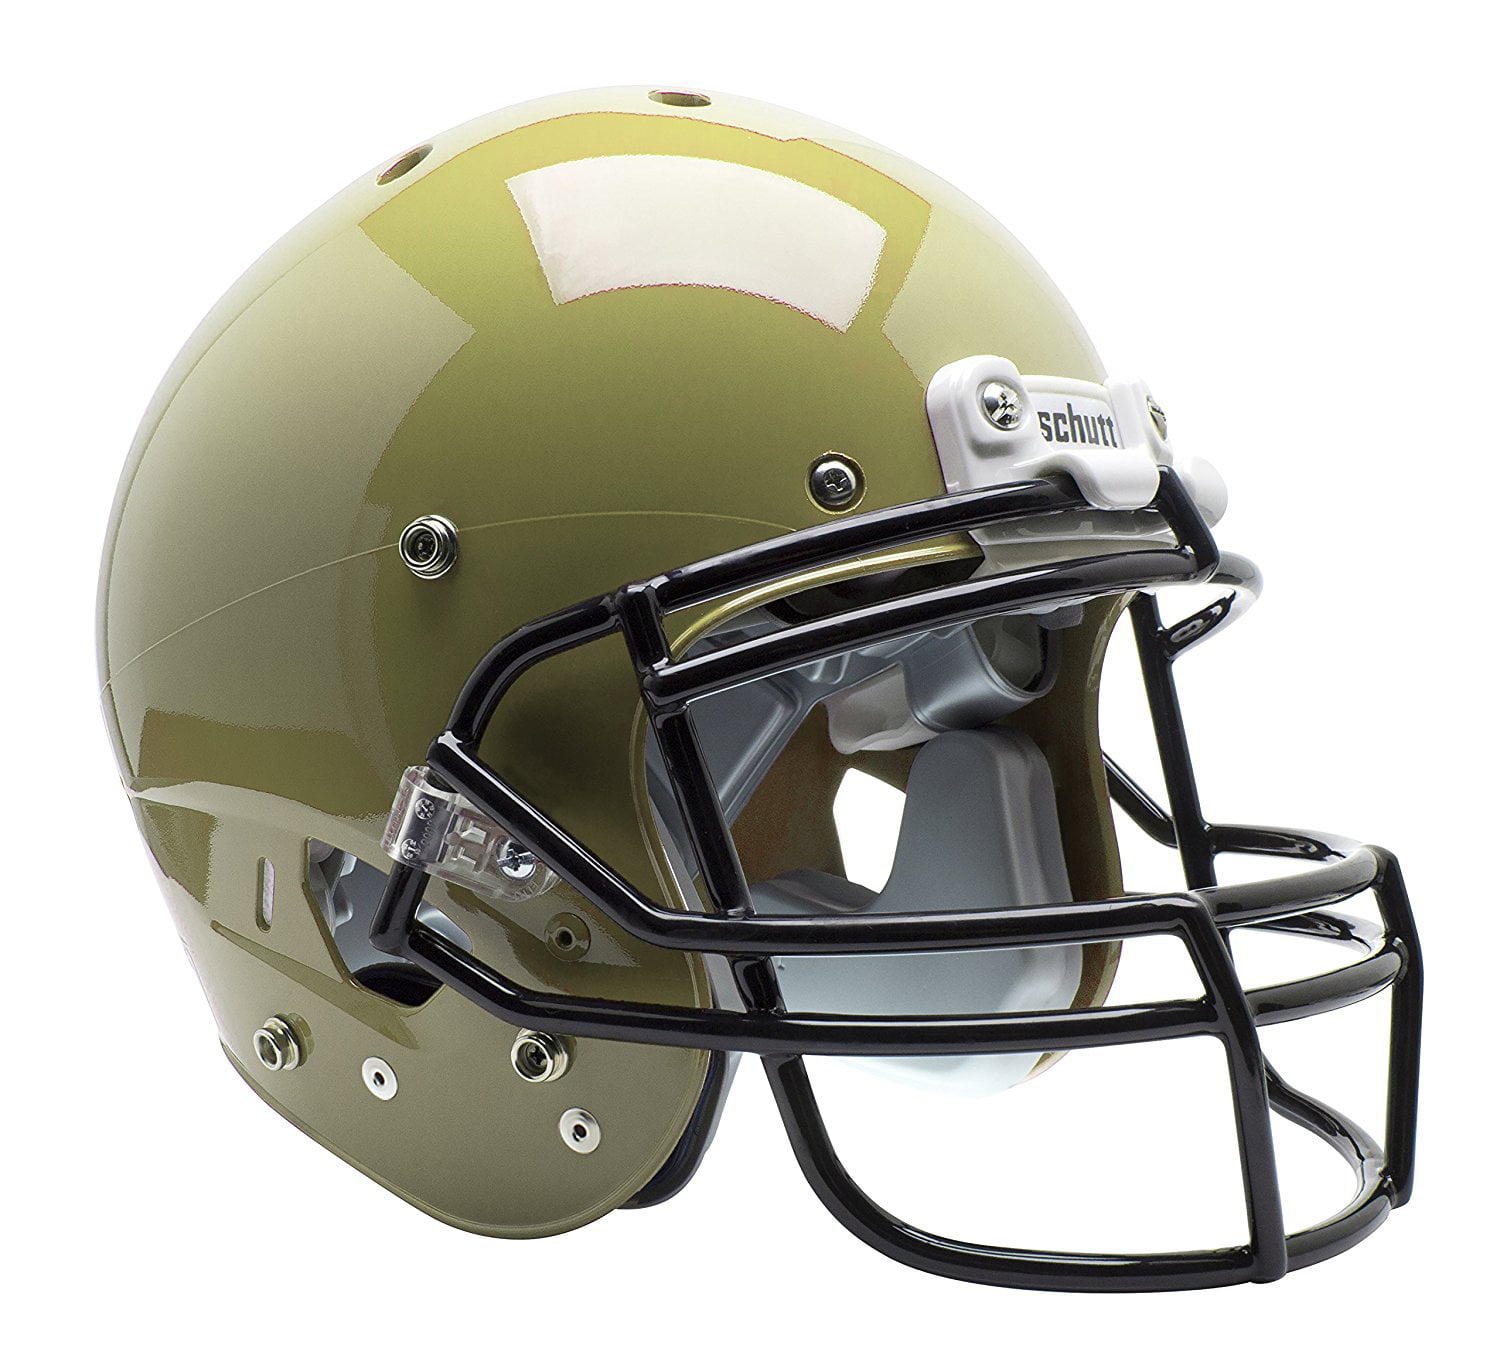 VEGAS GOLD Schutt AiR XP Pro VTD II Football Helmet ADULT LARGE w/ Facemask 